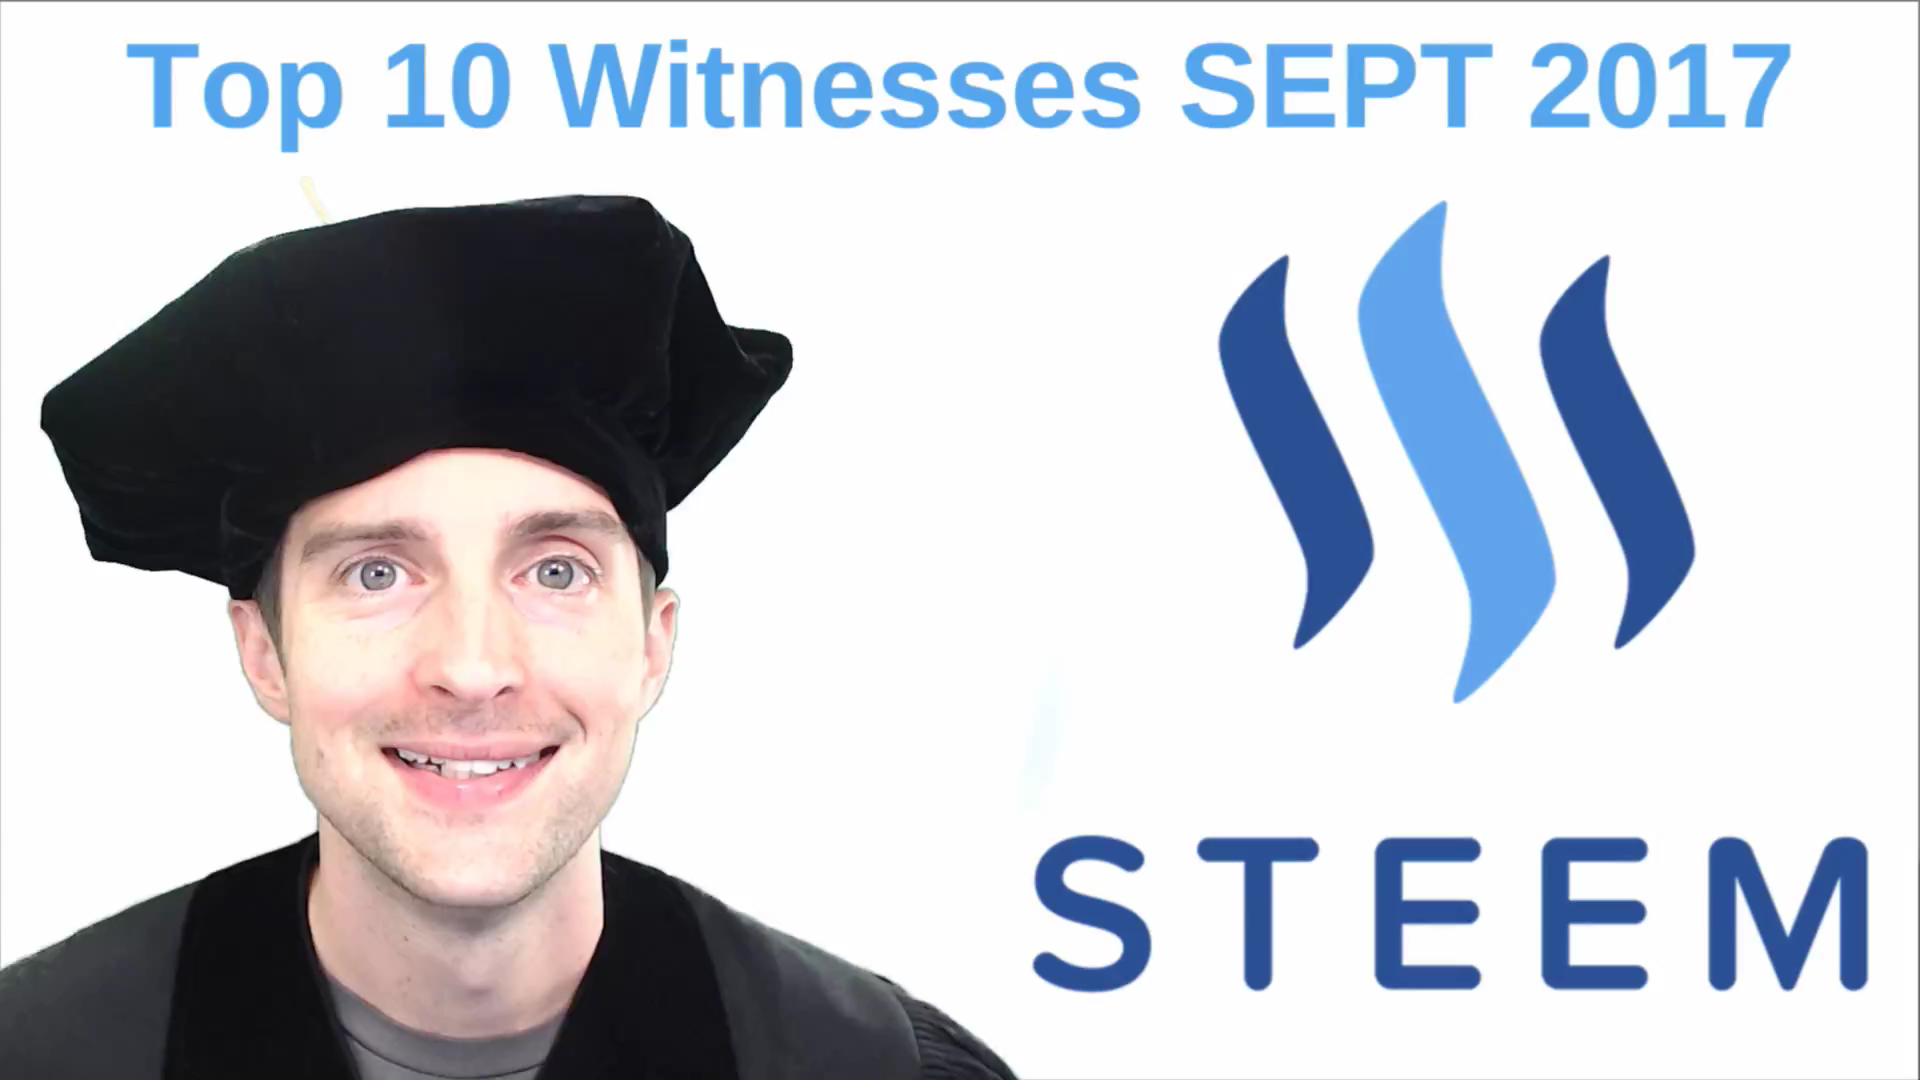 meet steem top 10 witnesses.png